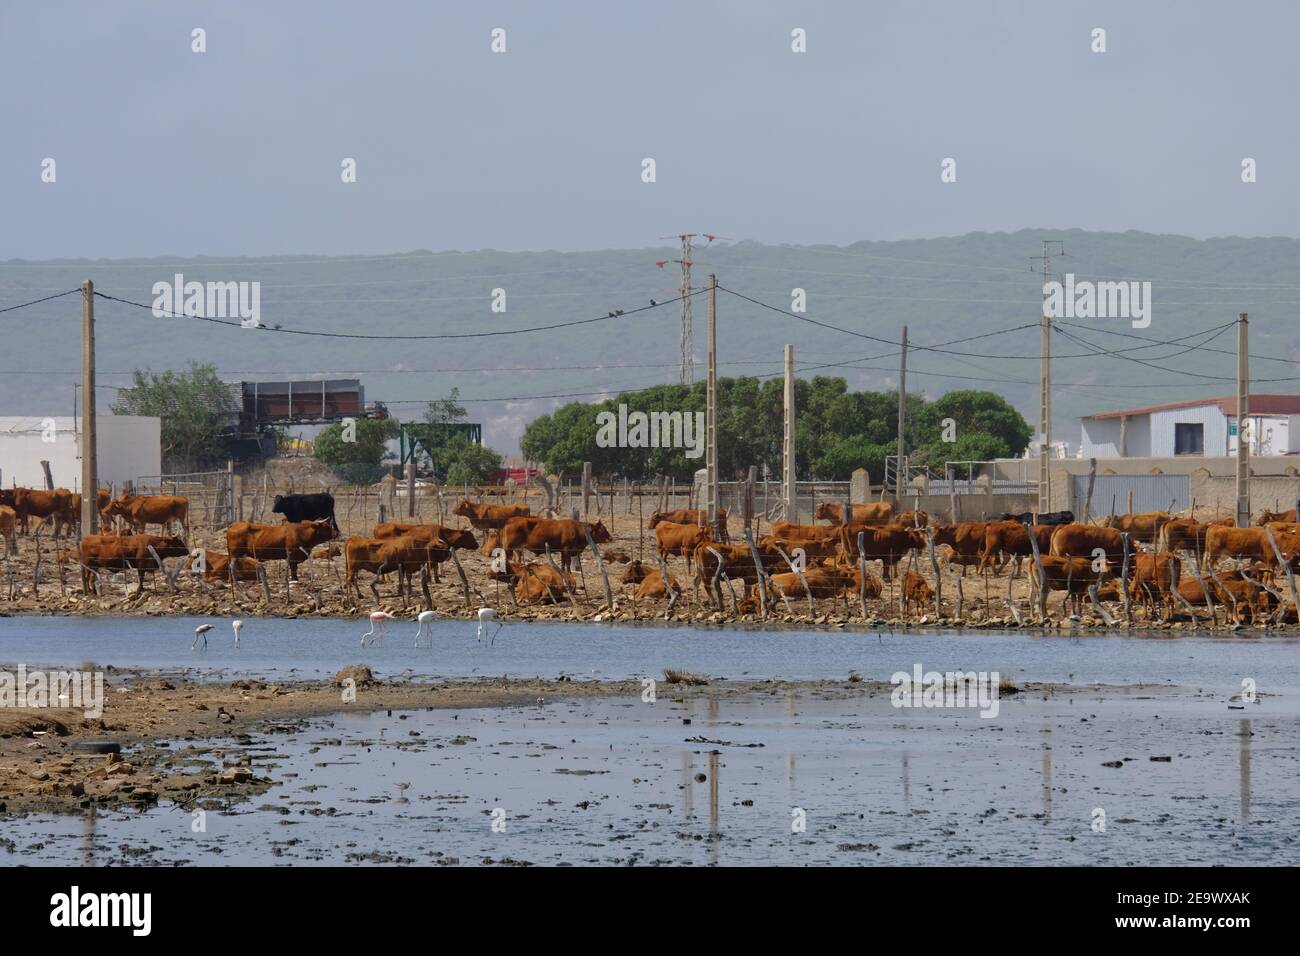 Ferme de bétail sur le bord de Barbate saltpans, province de Cadix, Andalousie, Espagne Banque D'Images